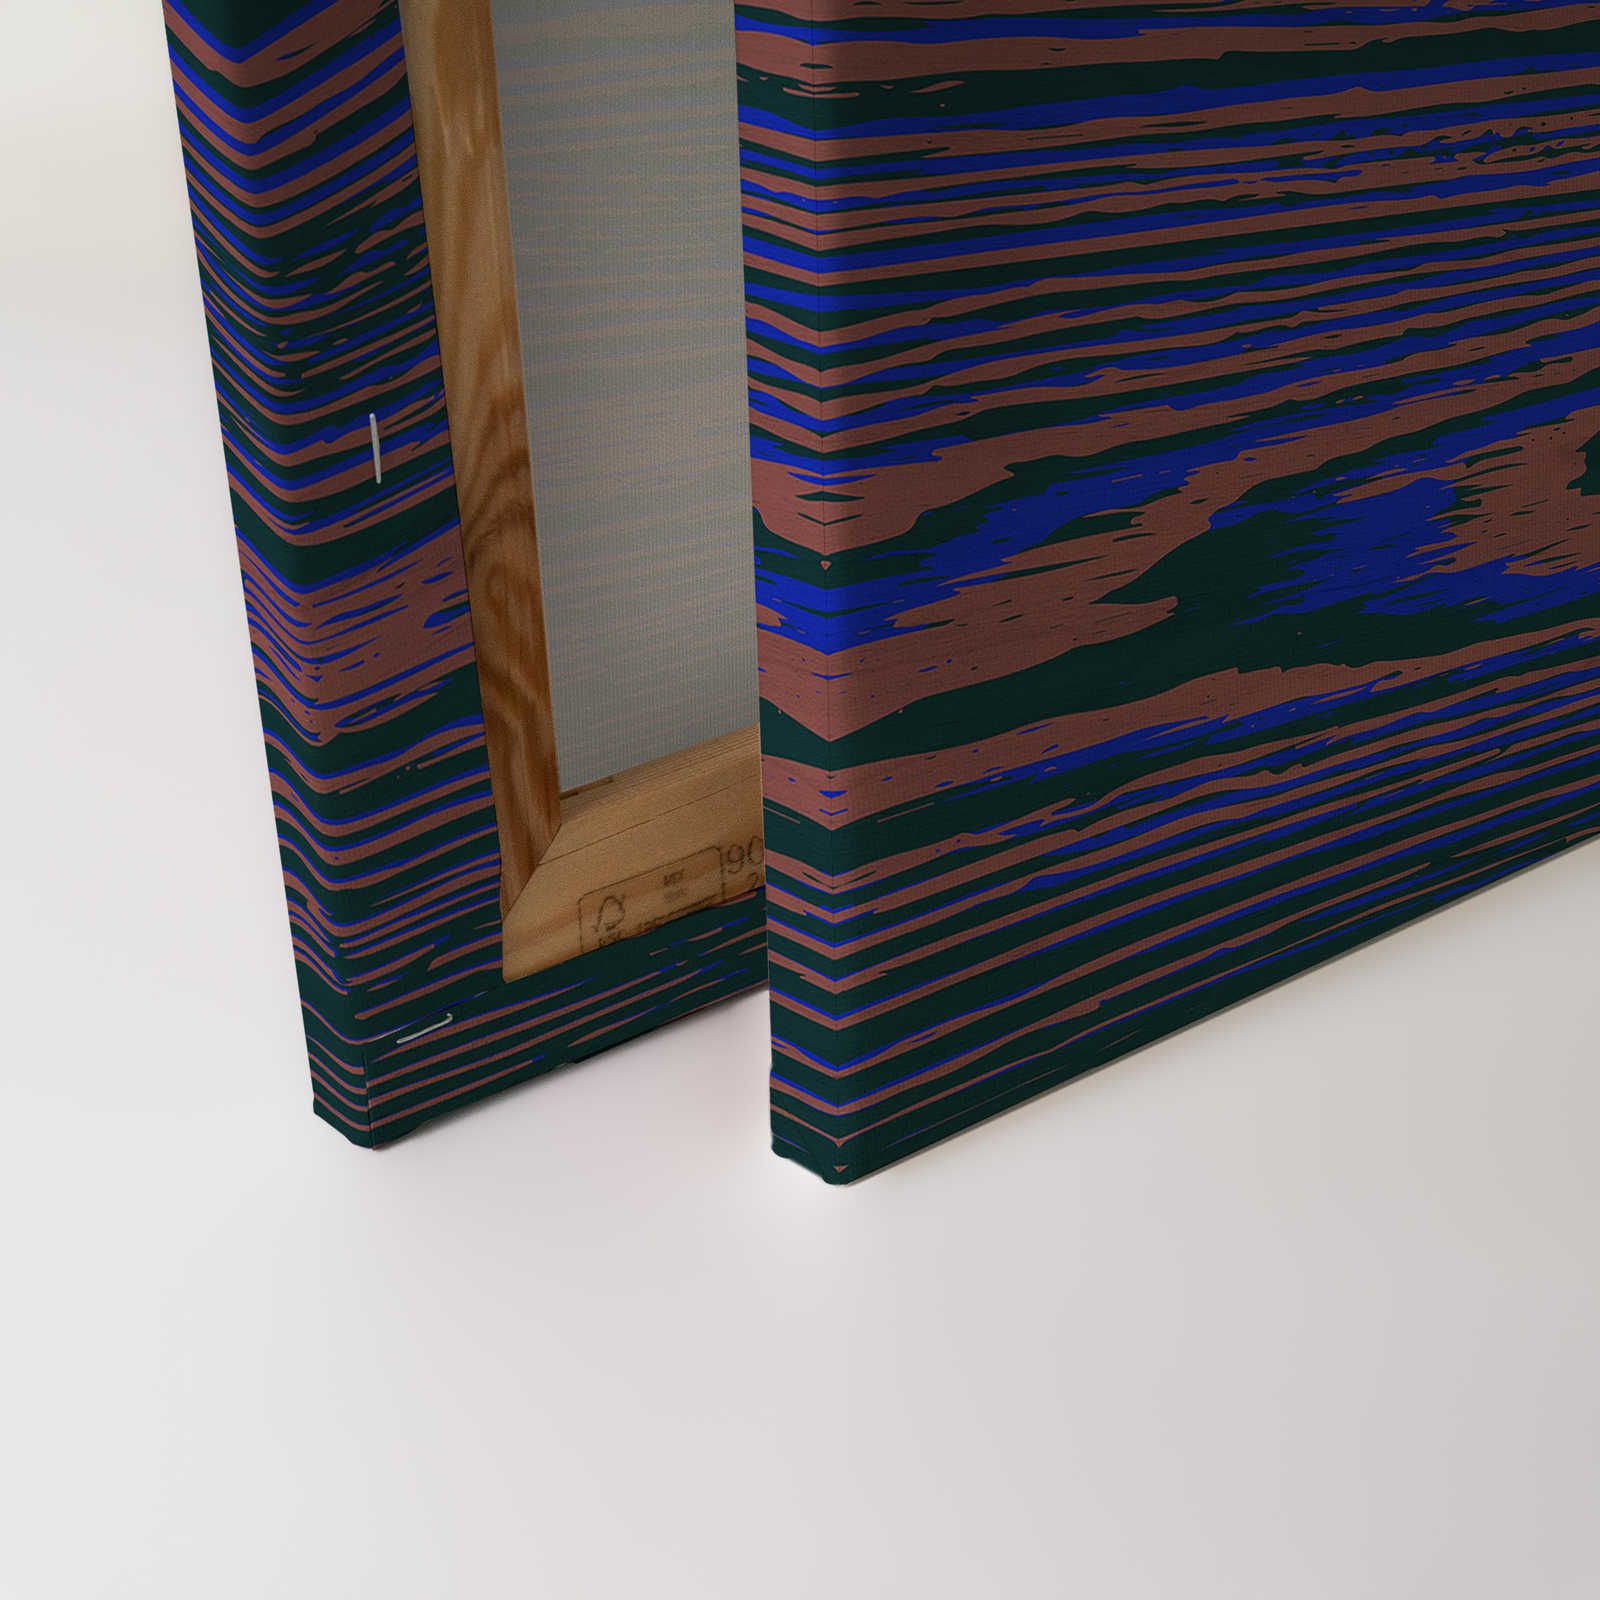             Kontiki 3 - Toile Veines de bois néon, violet & noir - 0,90 m x 0,60 m
        